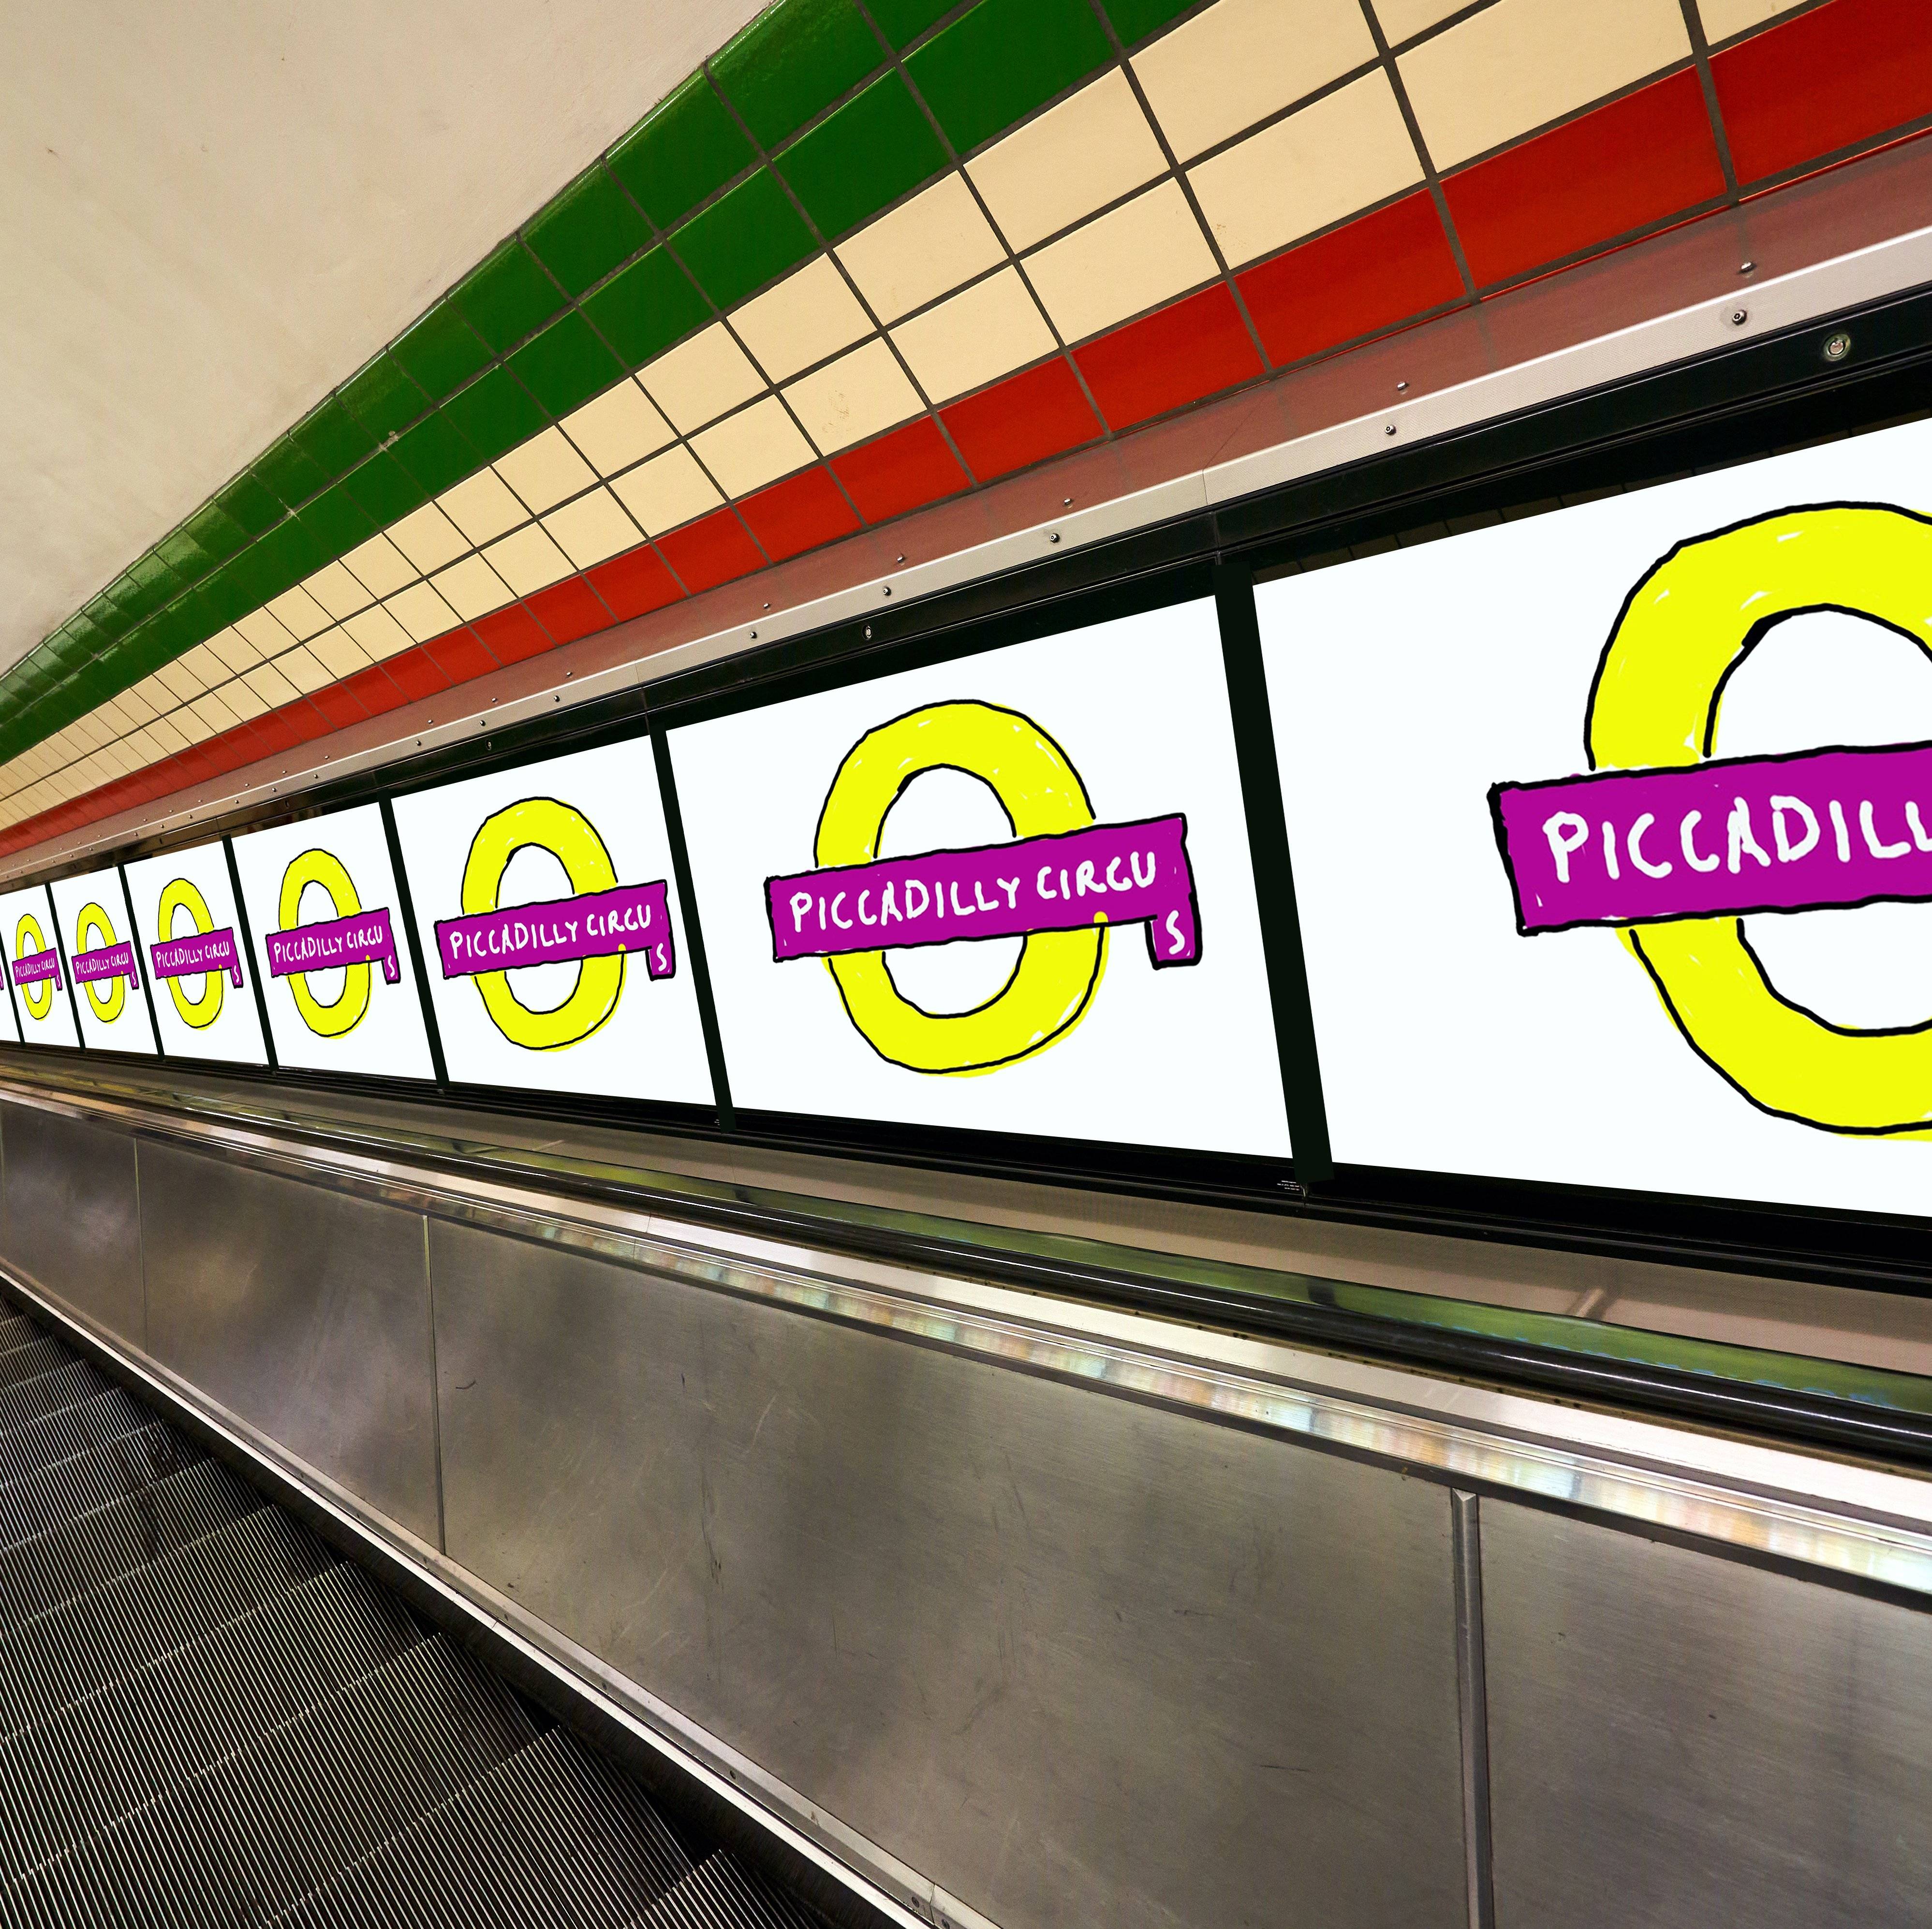 Le nouveau logo de David Hockney pour la station de métro Picccadilly Circus 